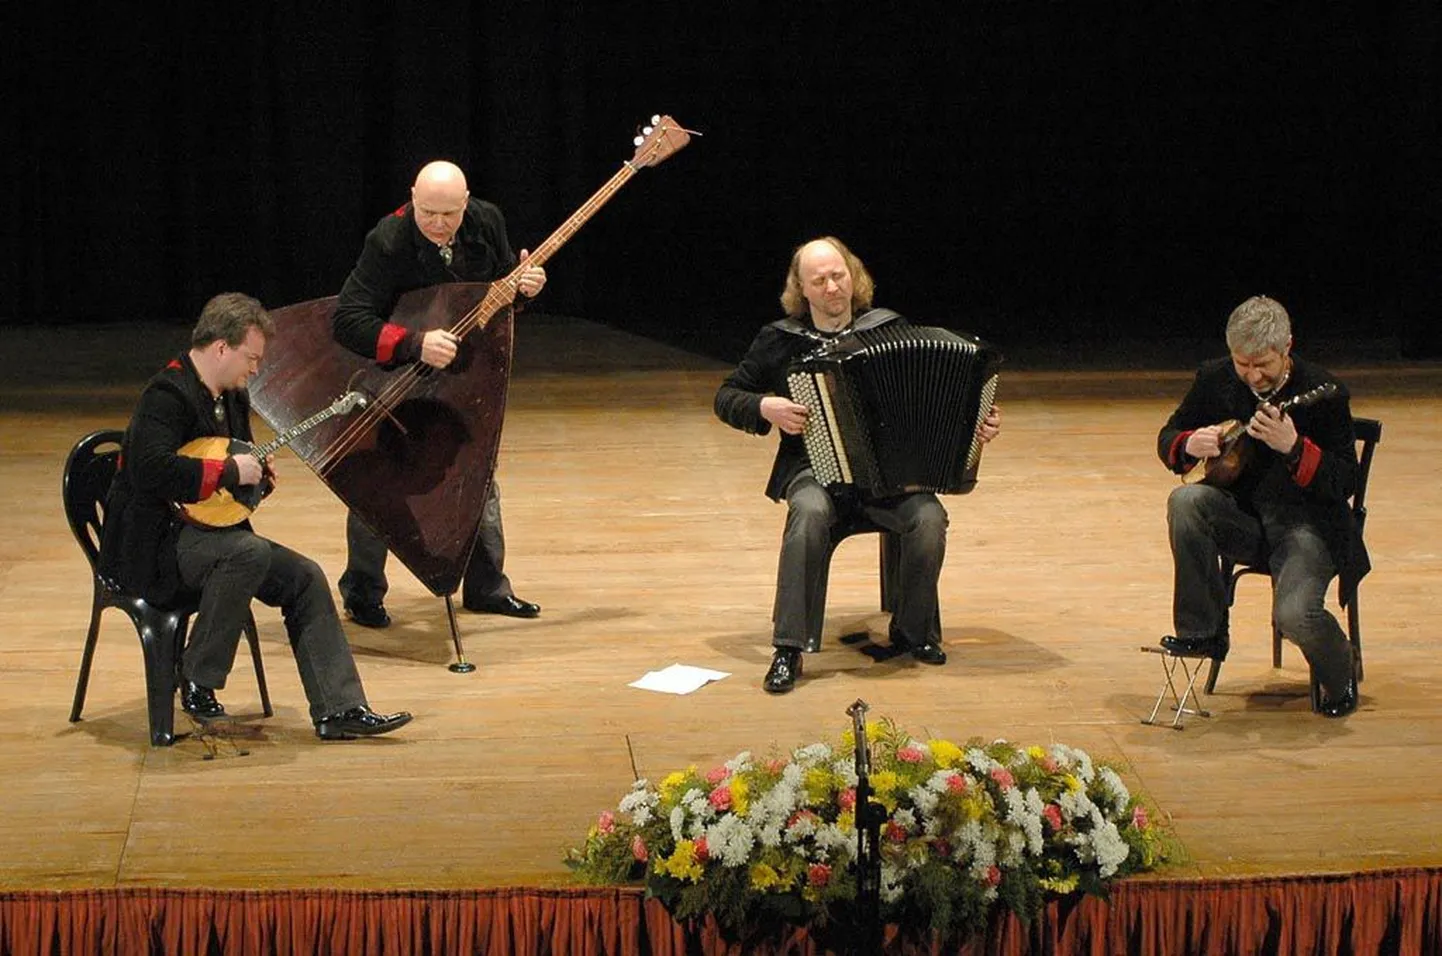 Fenomenaalne ansambel Terem Kvartett (St Peterburg), kes on loonud täiesti uue lähenemise vene rahvapillidele ja nendel mängimisele.